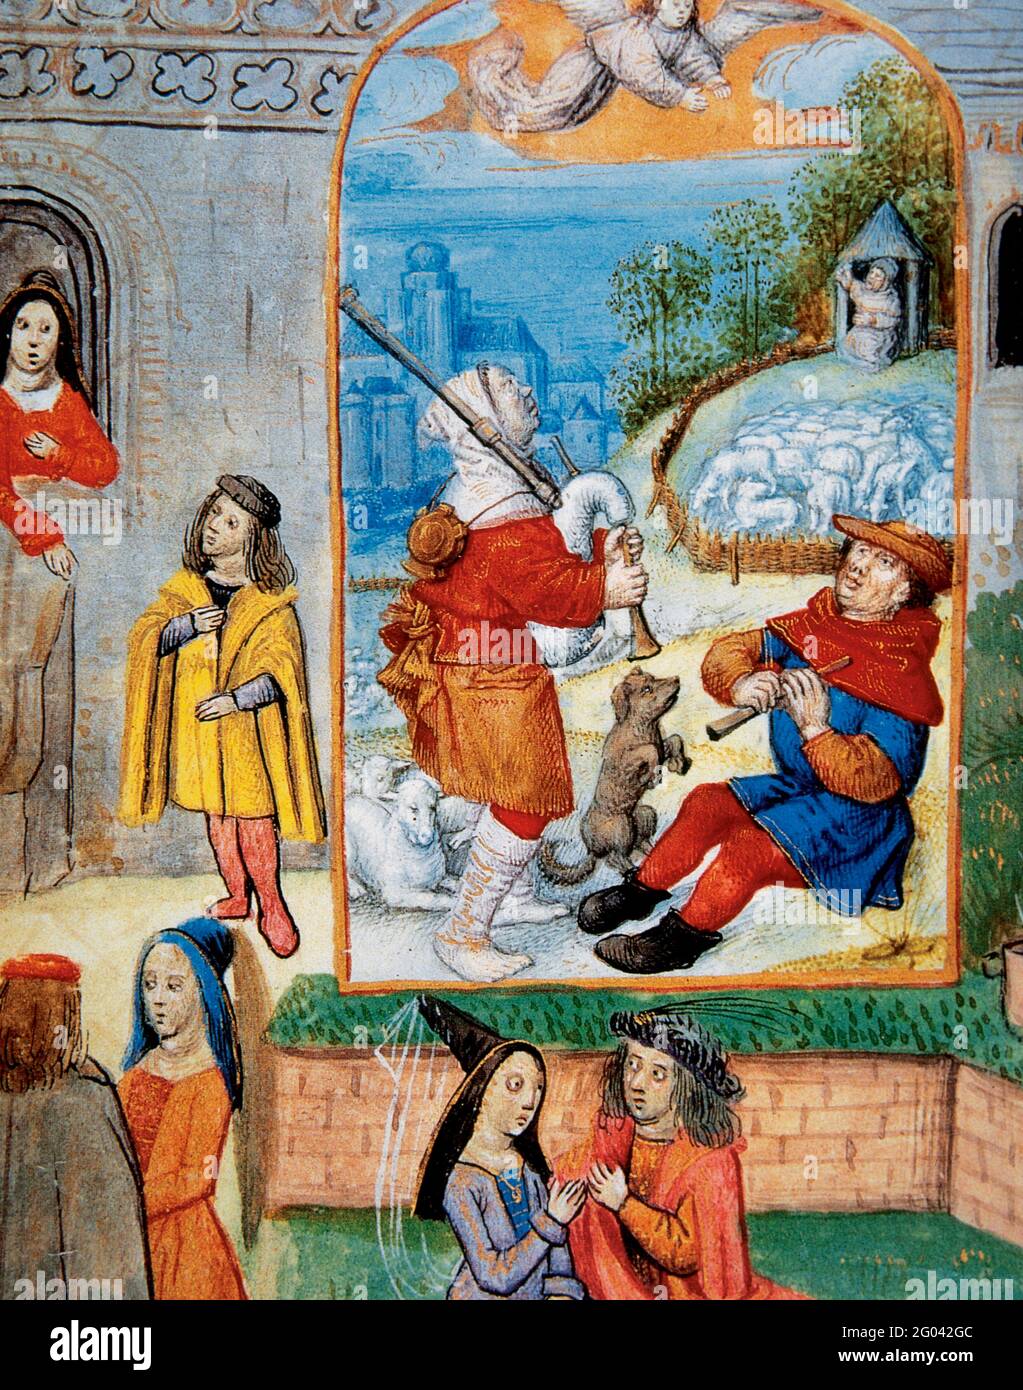 Mittelalterliche Gesellschaft. Miniatur aus dem 15. Jahrhundert, die das Leben der Dorfbewohner darstellt. Conde Museum. Chantilly. Frankreich. Stockfoto